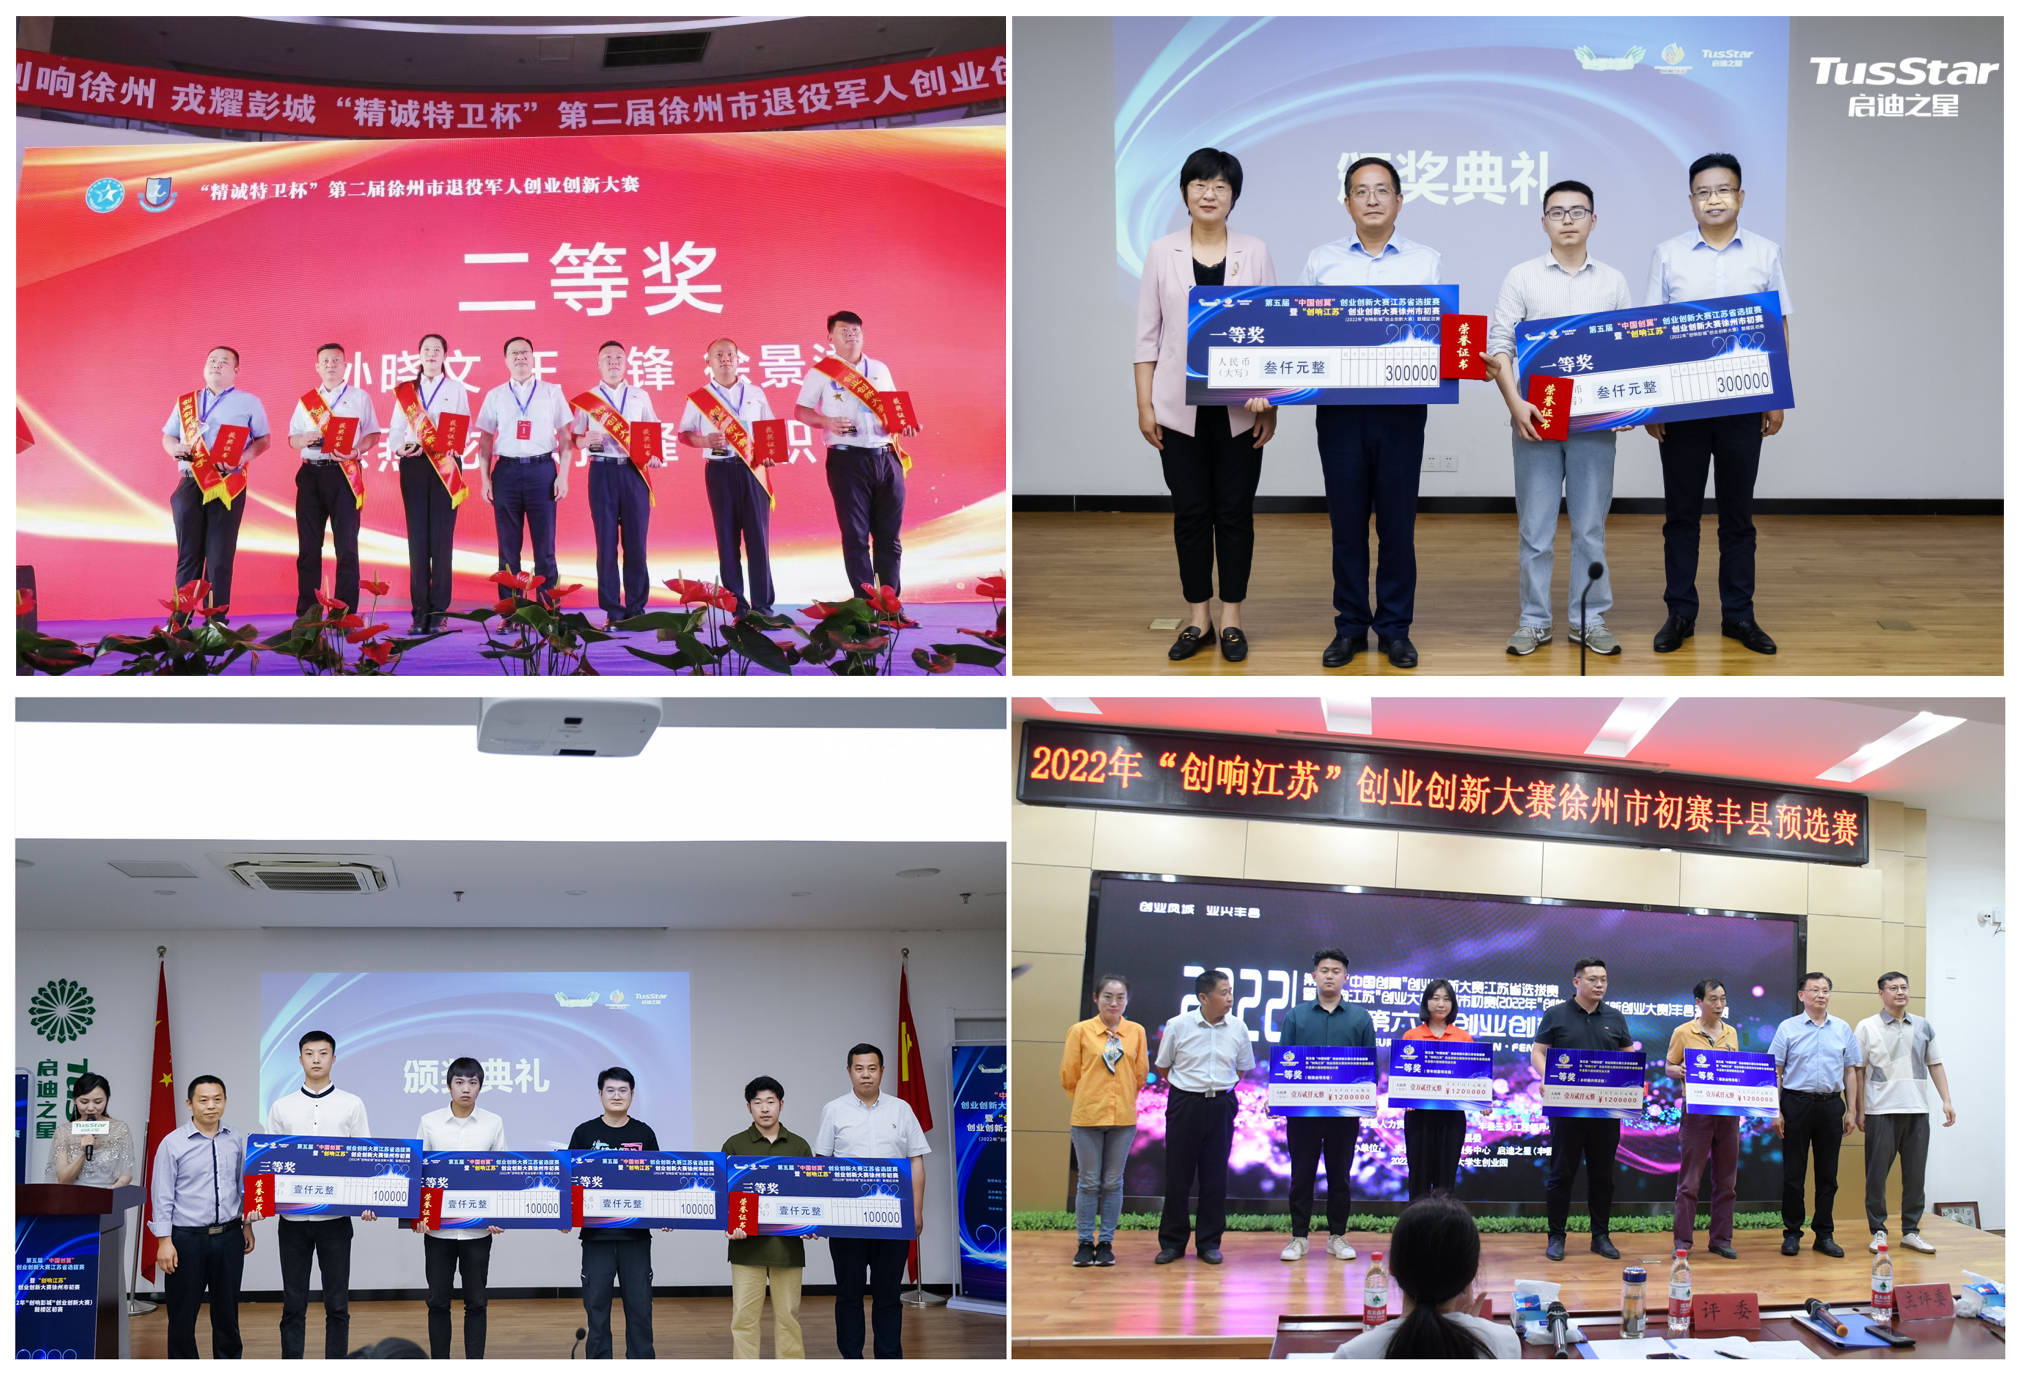 6项荣誉，95家科小，104场创新活动，2022启迪之星（徐州）多元化发展成效凸显